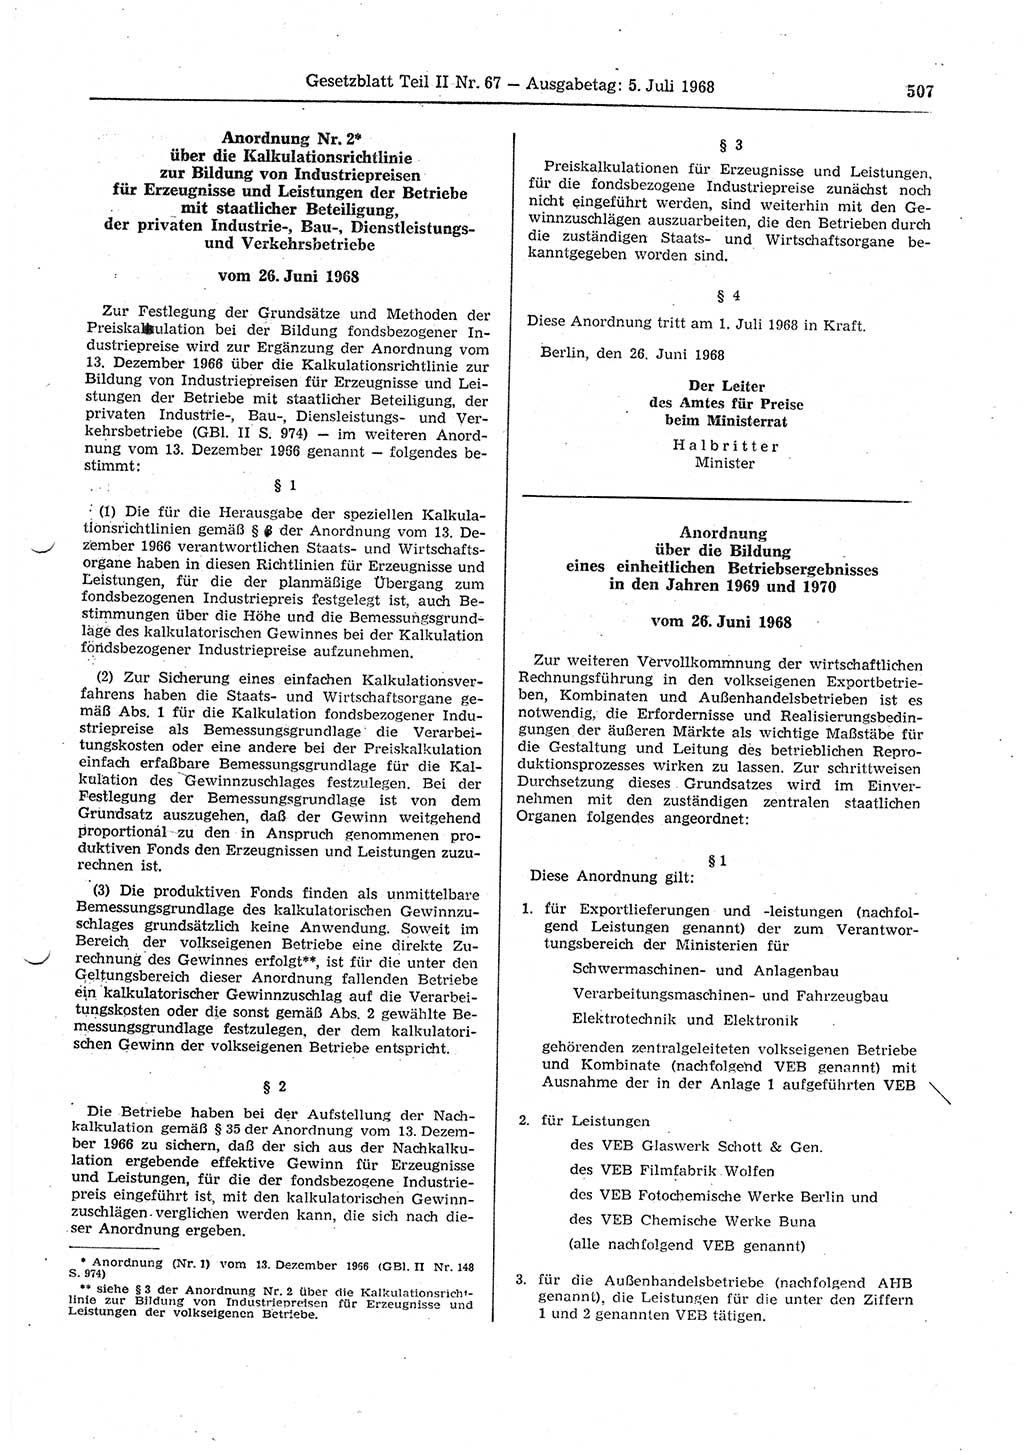 Gesetzblatt (GBl.) der Deutschen Demokratischen Republik (DDR) Teil ⅠⅠ 1968, Seite 507 (GBl. DDR ⅠⅠ 1968, S. 507)